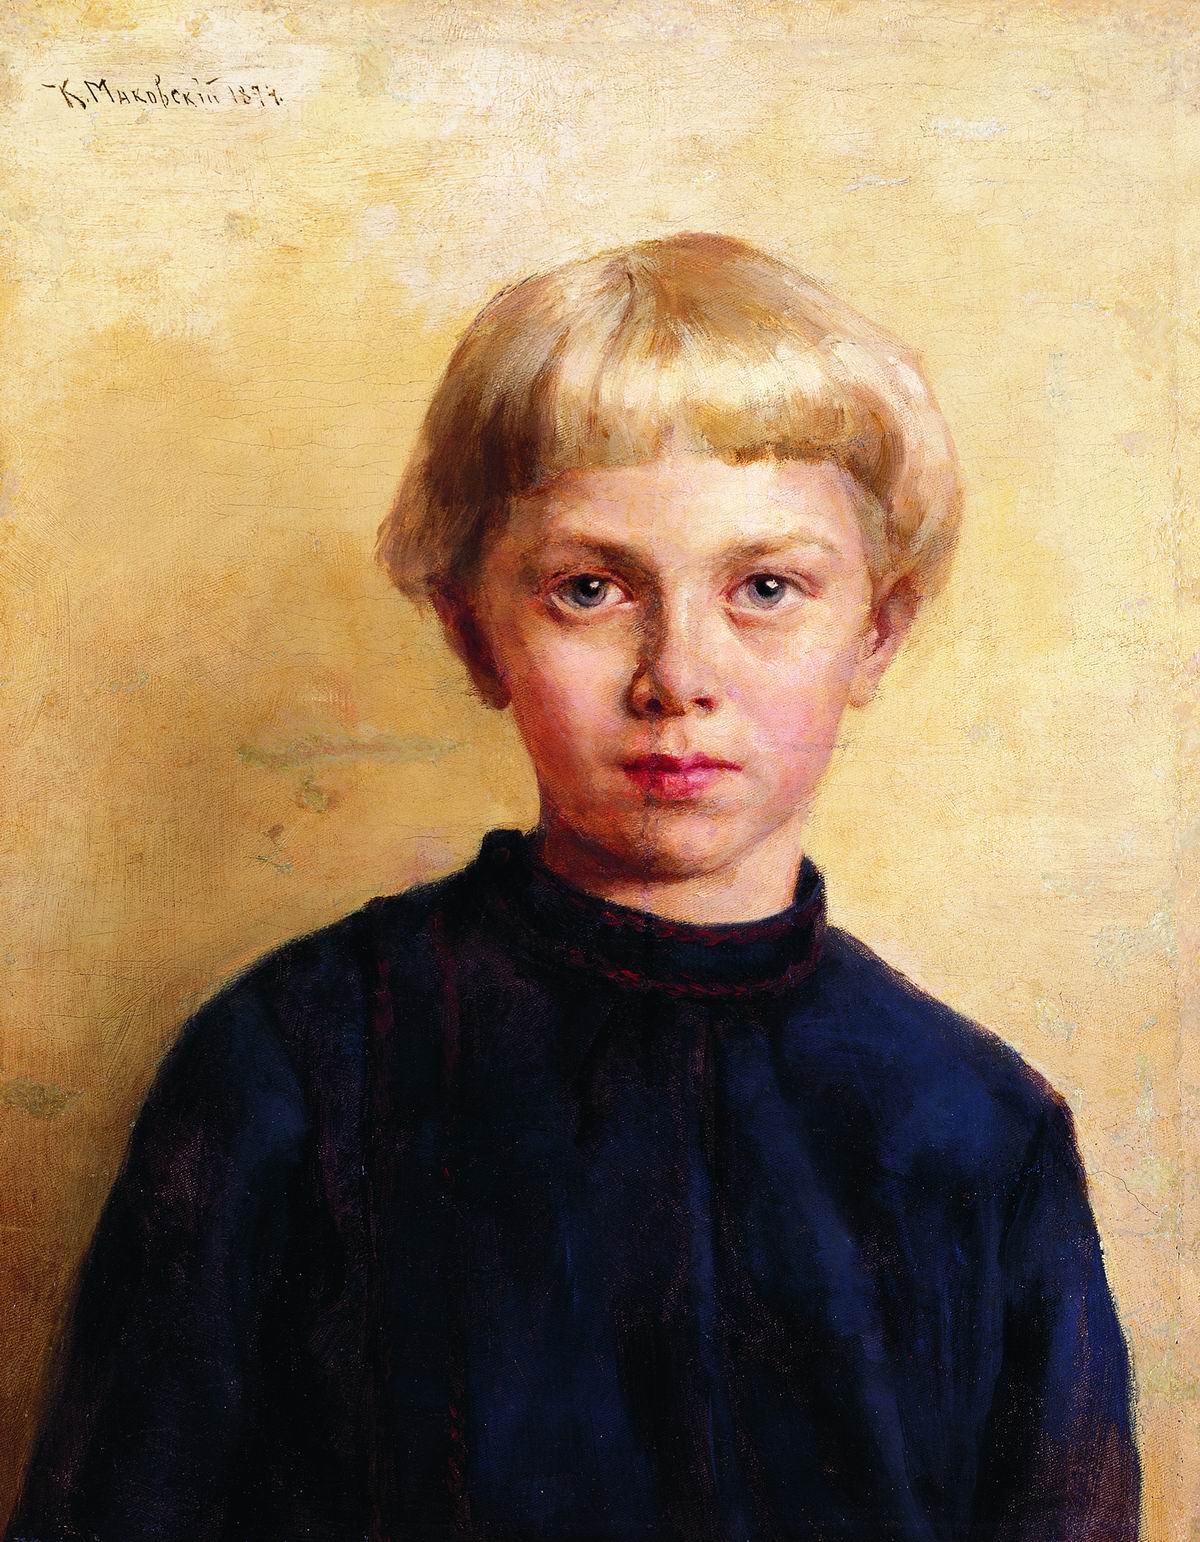 Маковский К.. Портрет мальчика. 1874